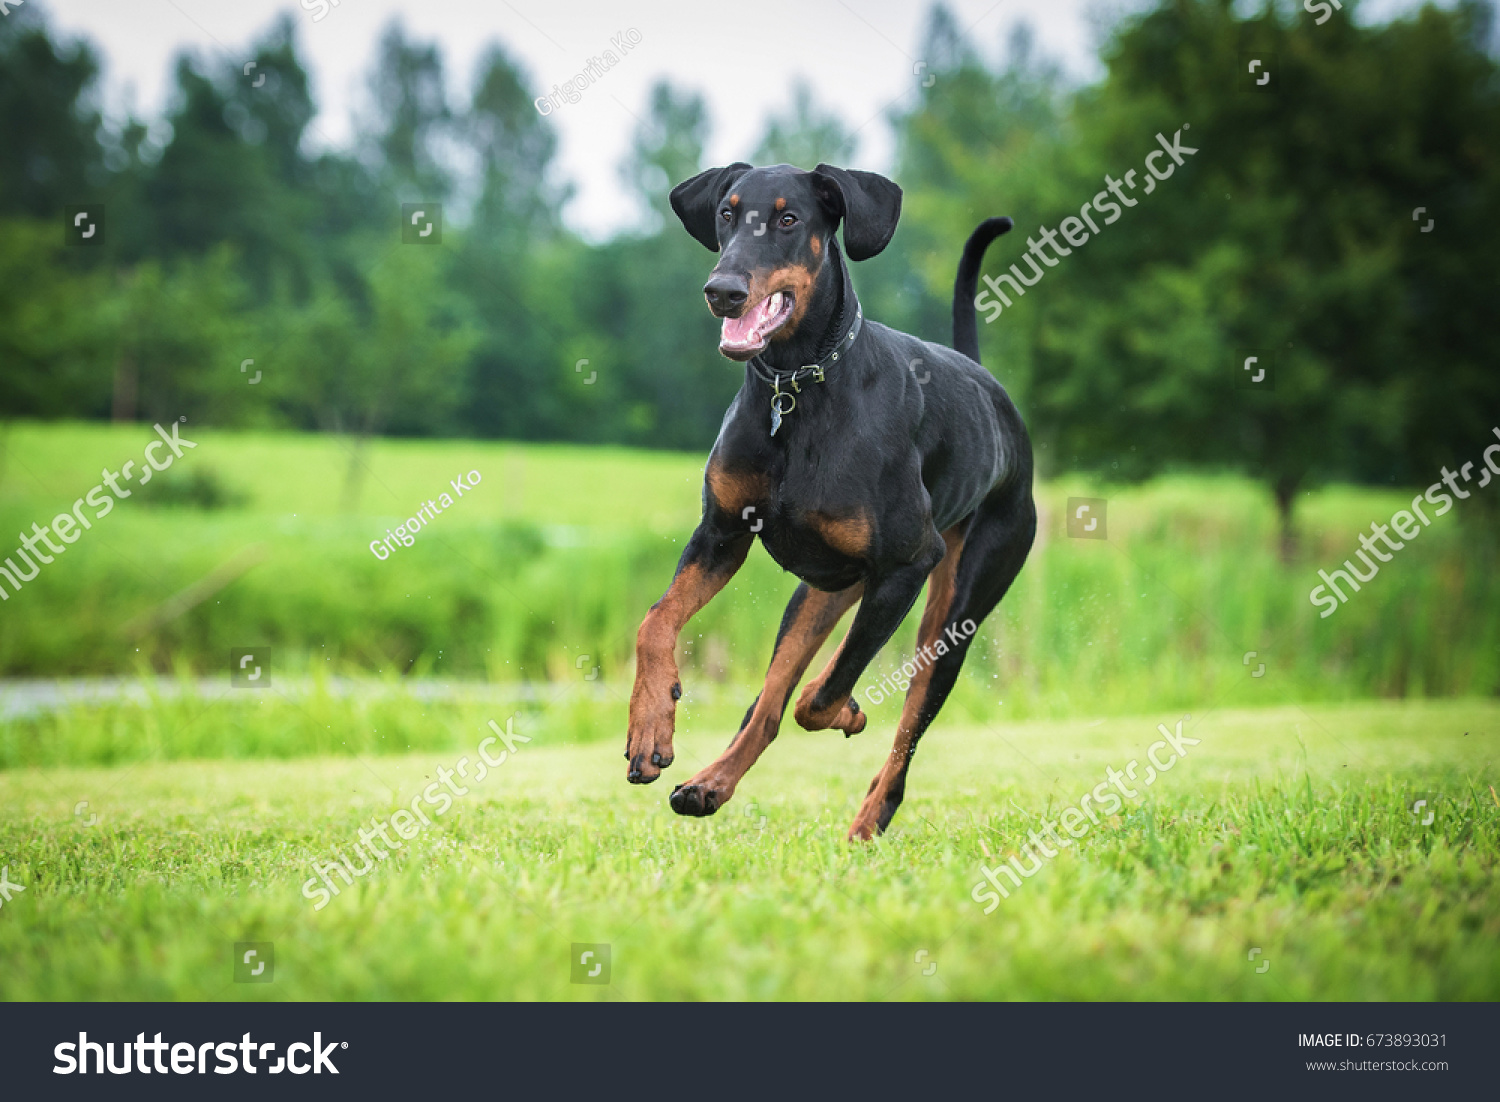 ドバーマン ピンシャー犬が走る の写真素材 今すぐ編集